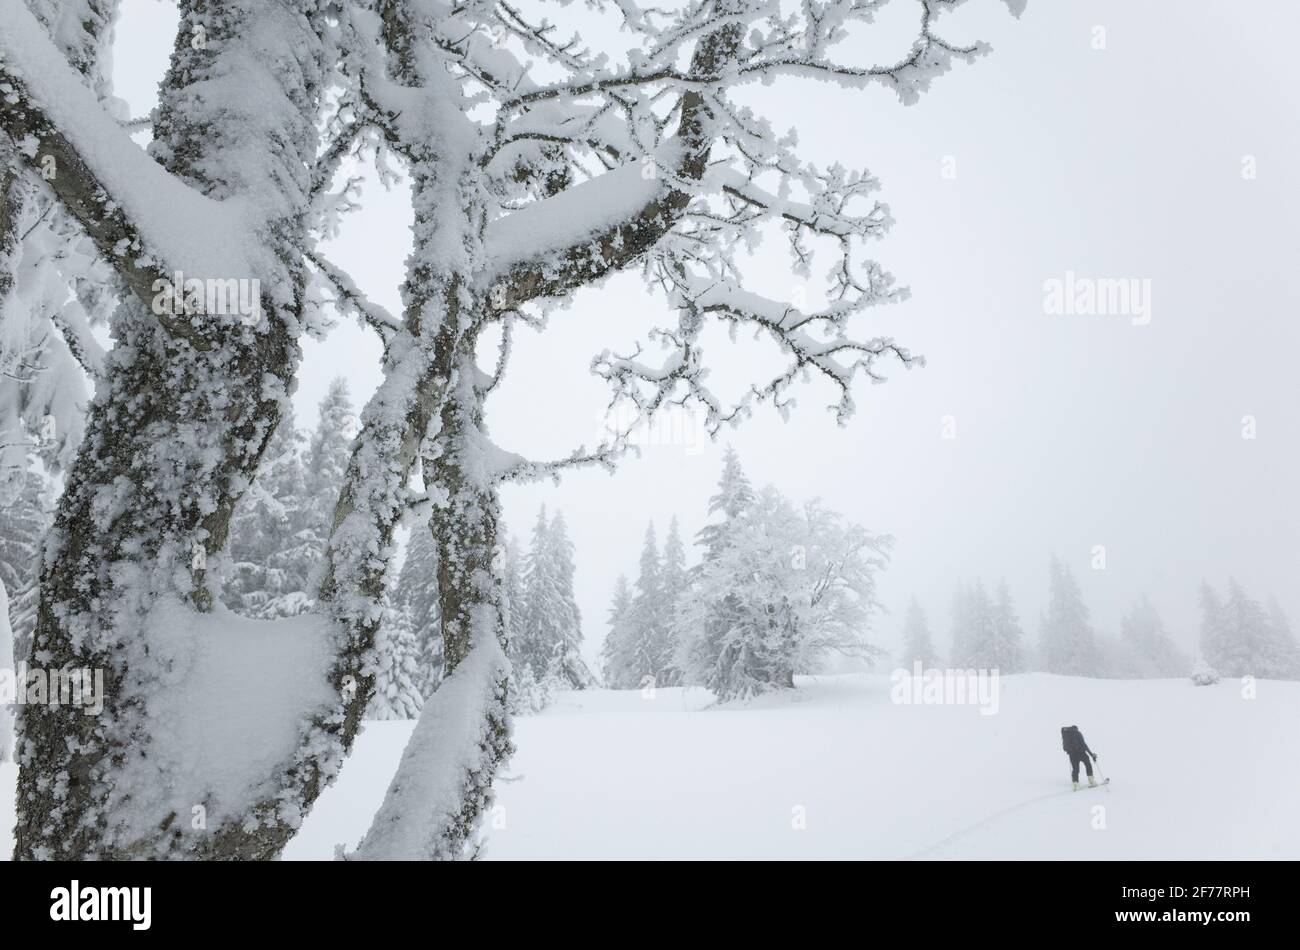 Switzerland, Vaud, Jura, ski mountaineering to La Dole Stock Photo